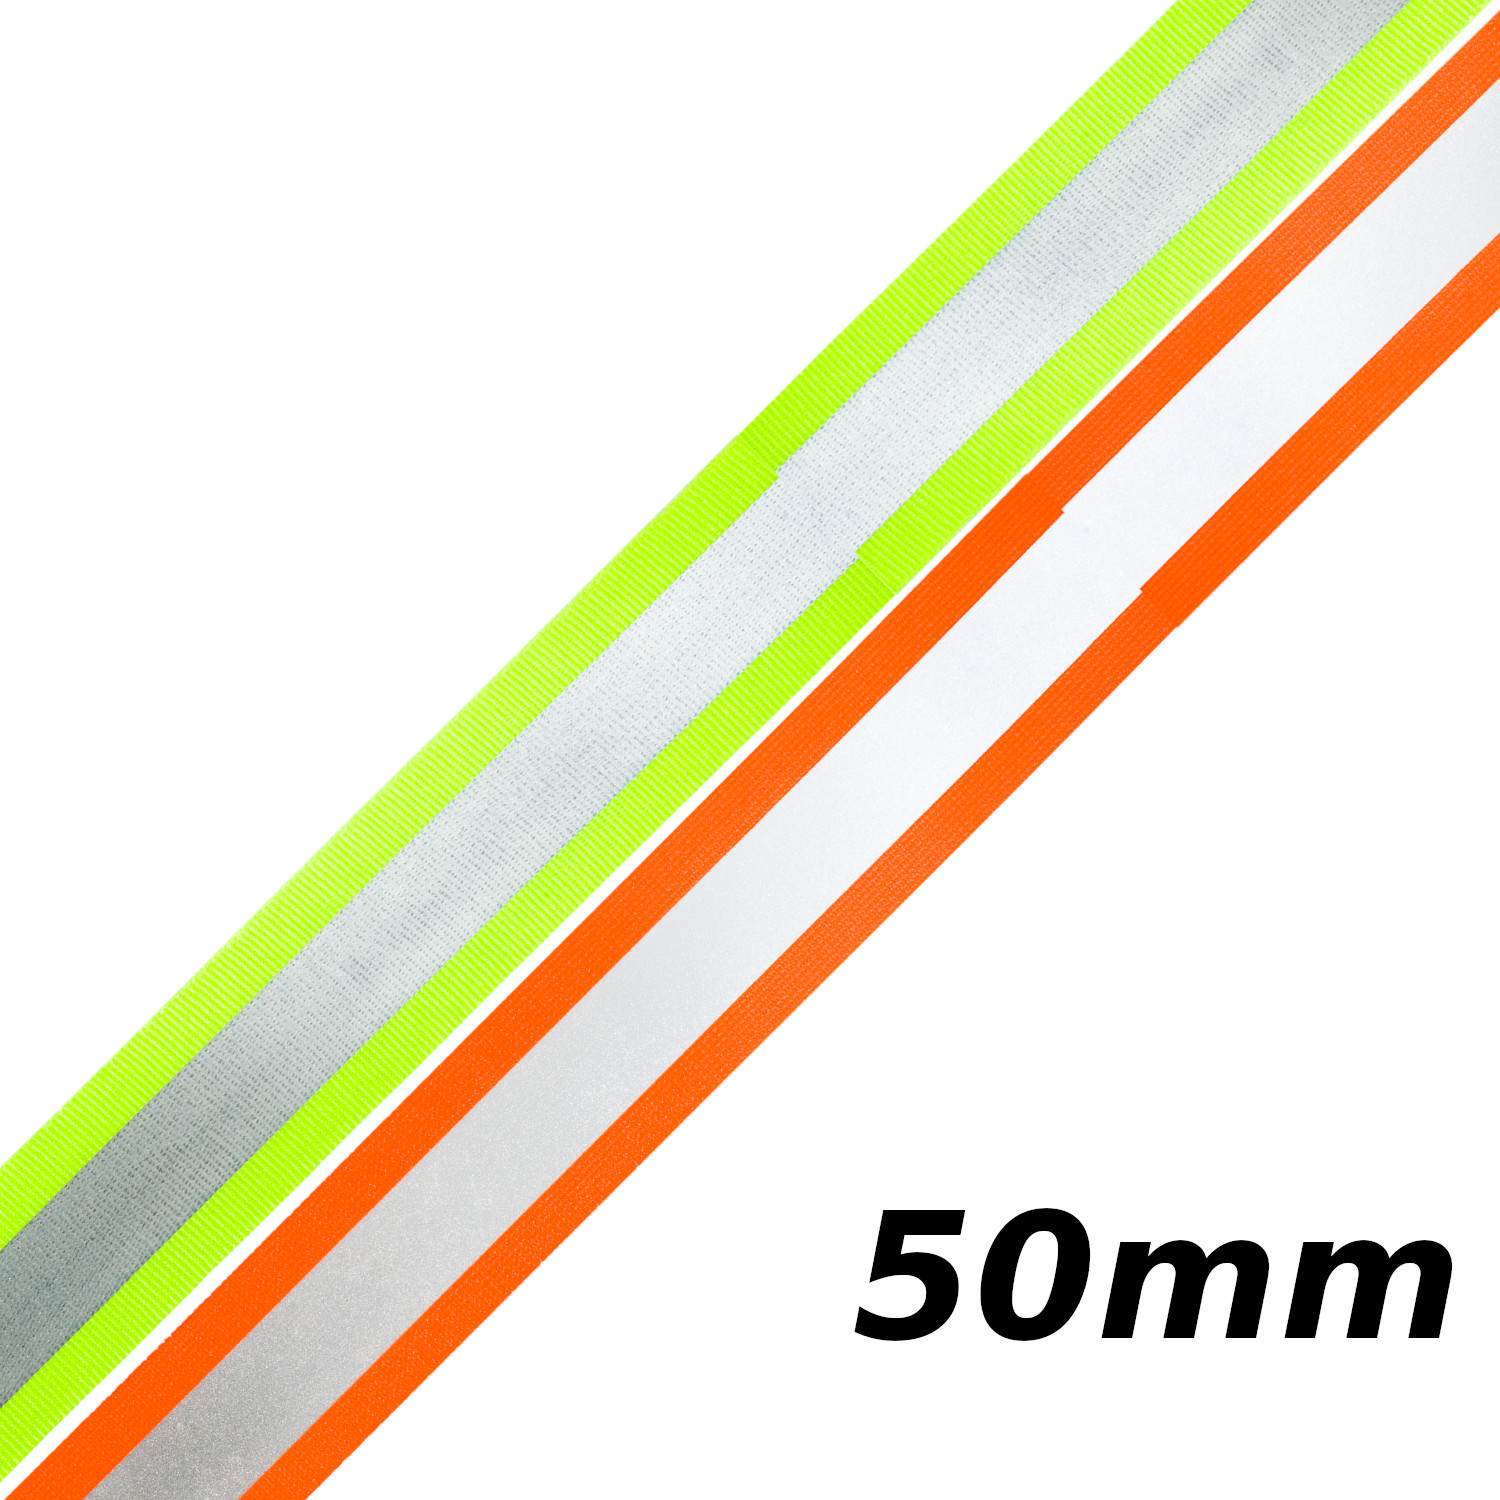 Reflektorband 50mm breit in 2 Farben